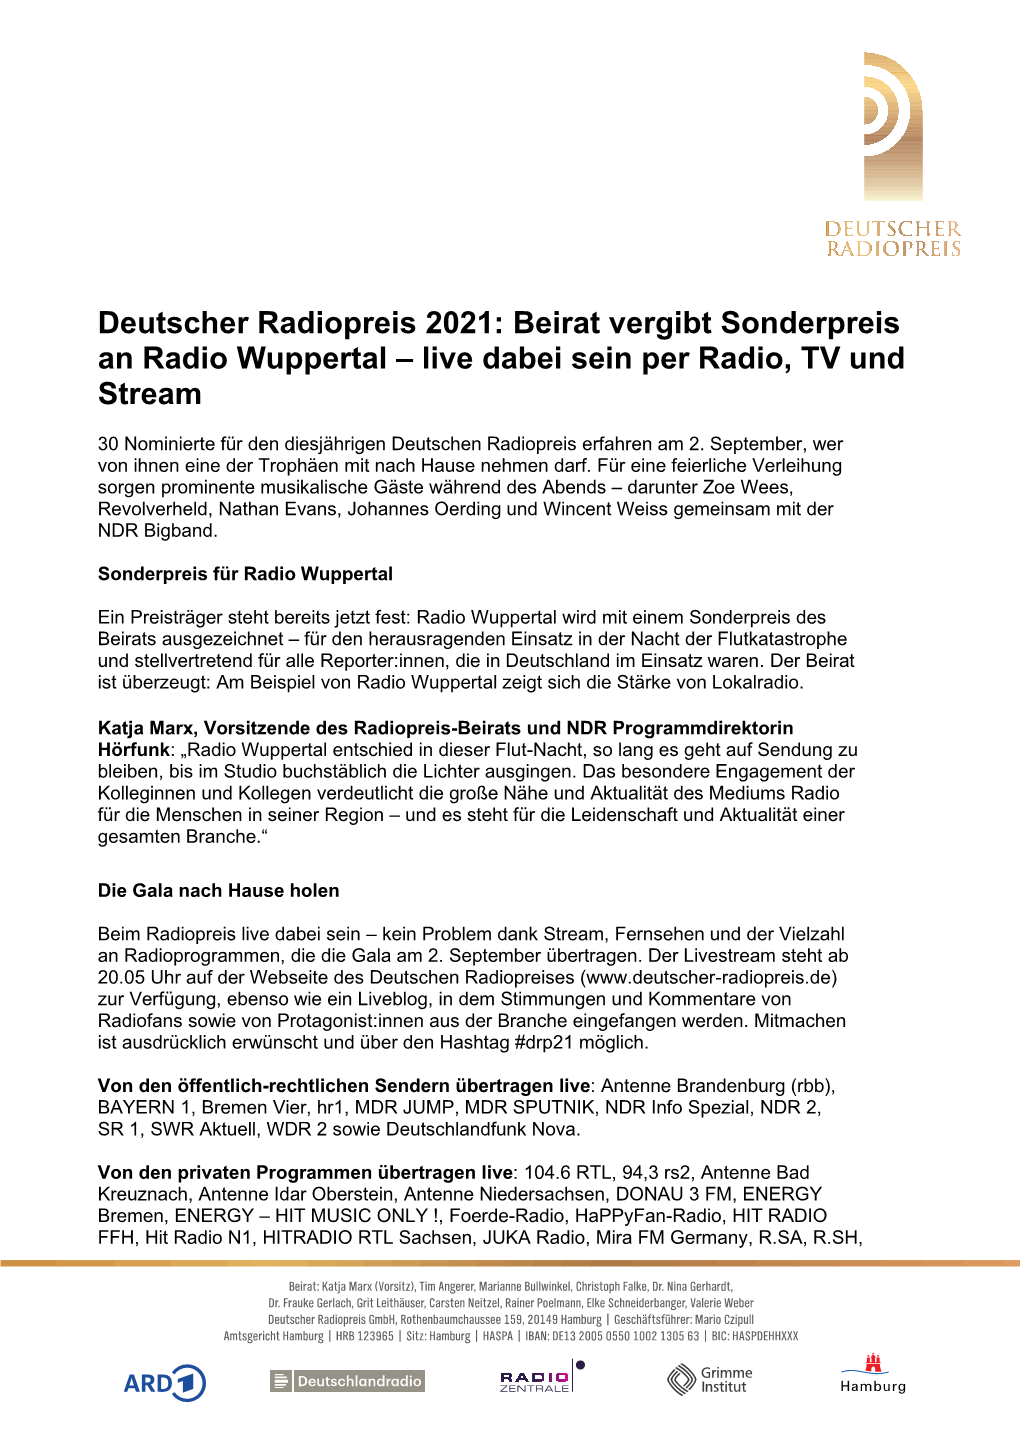 Beirat Vergibt Sonderpreis an Radio Wuppertal – Live Dabei Sein Per Radio, TV Und Stream